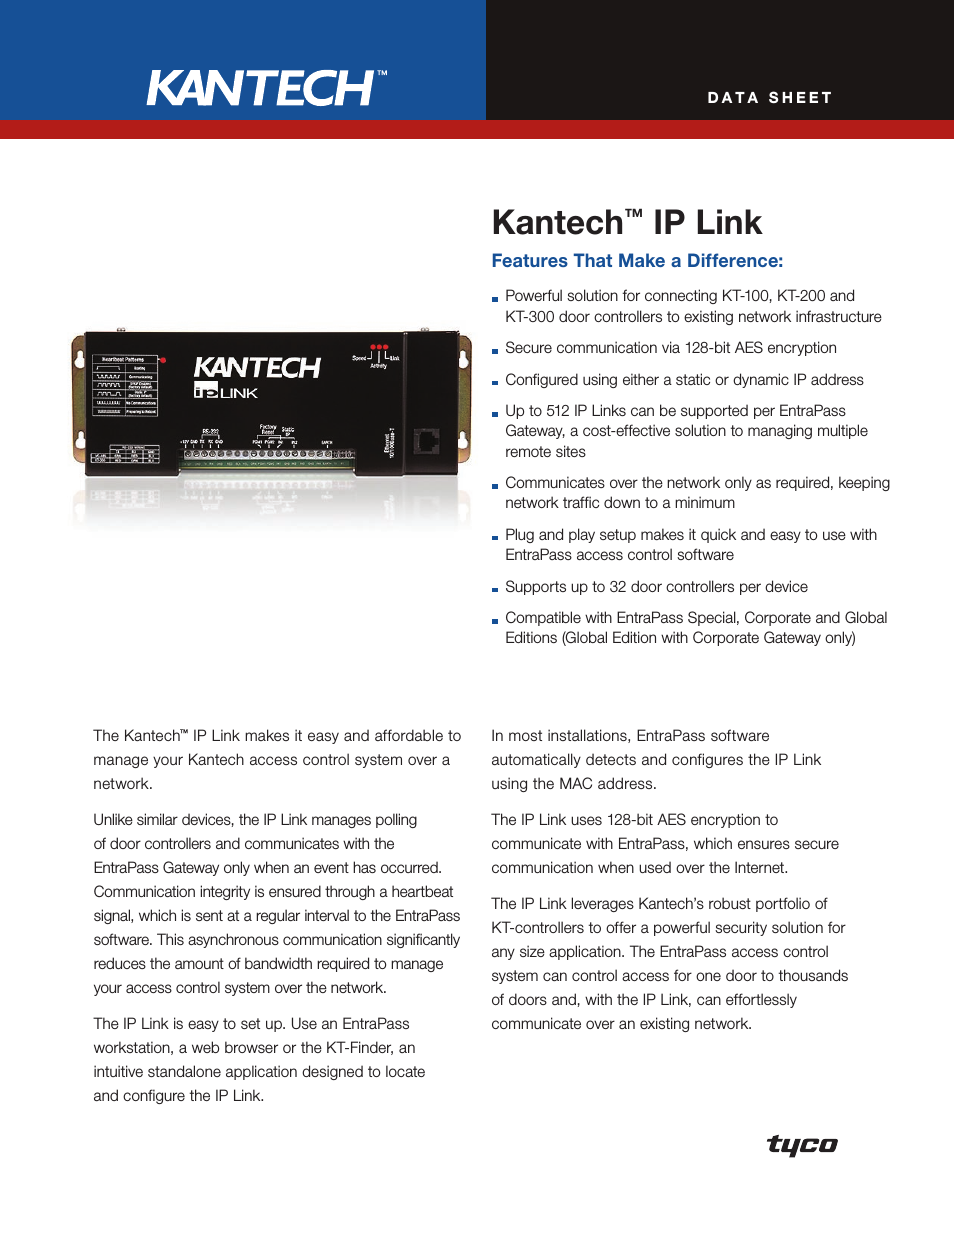 Kantech KT-300